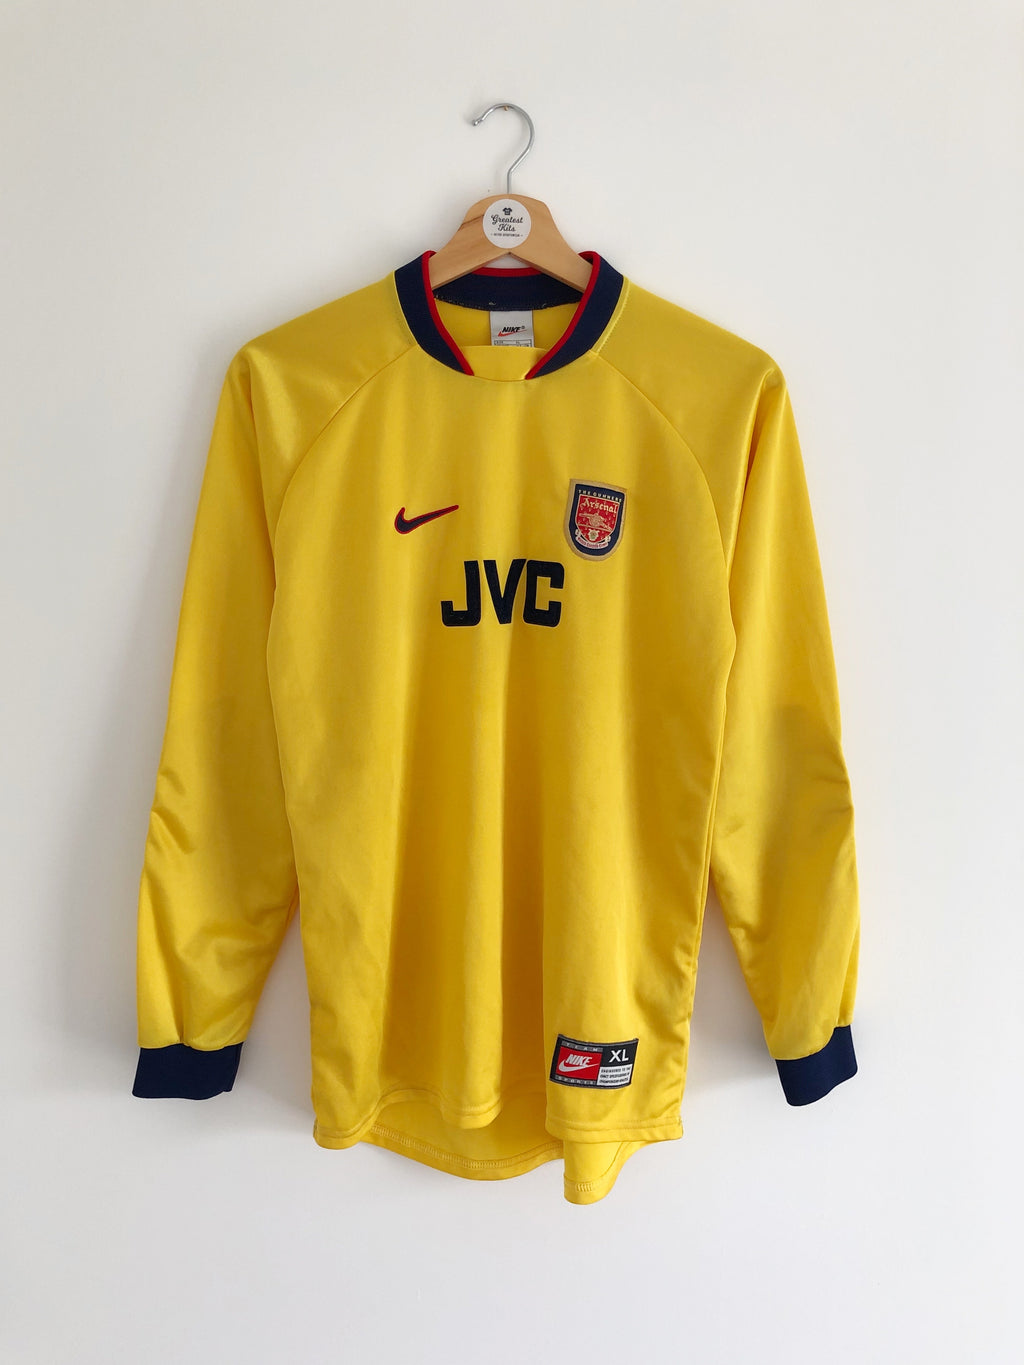 Maillot Arsenal GK 1997/98 (XL.Garçons) 8,5/10